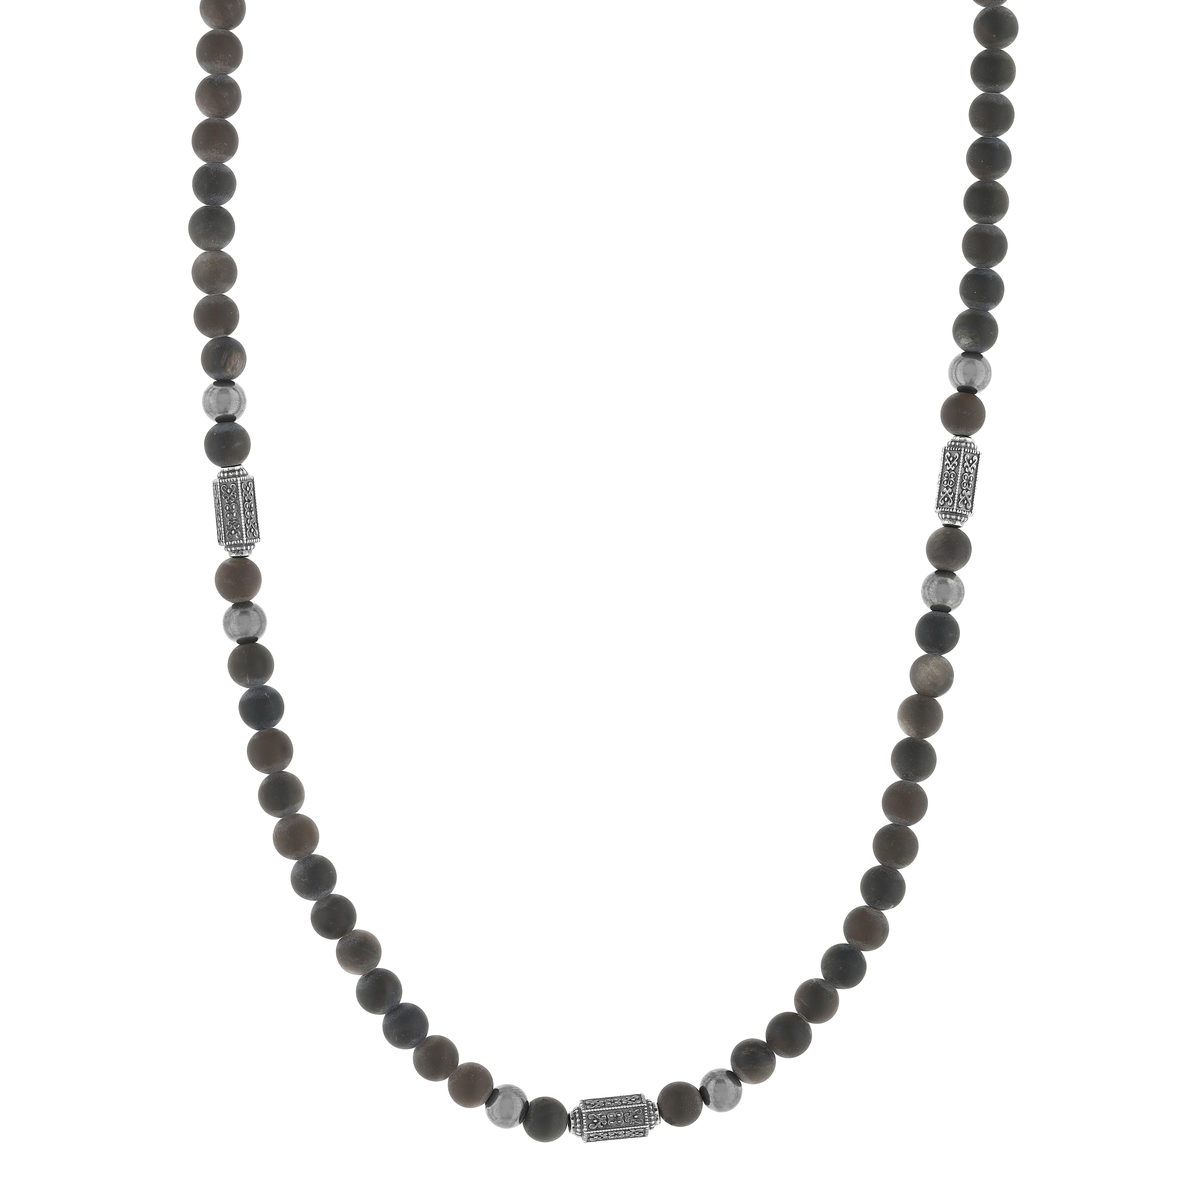 Collier perles obsidiennes noires et perles argent 48cm - vue 2